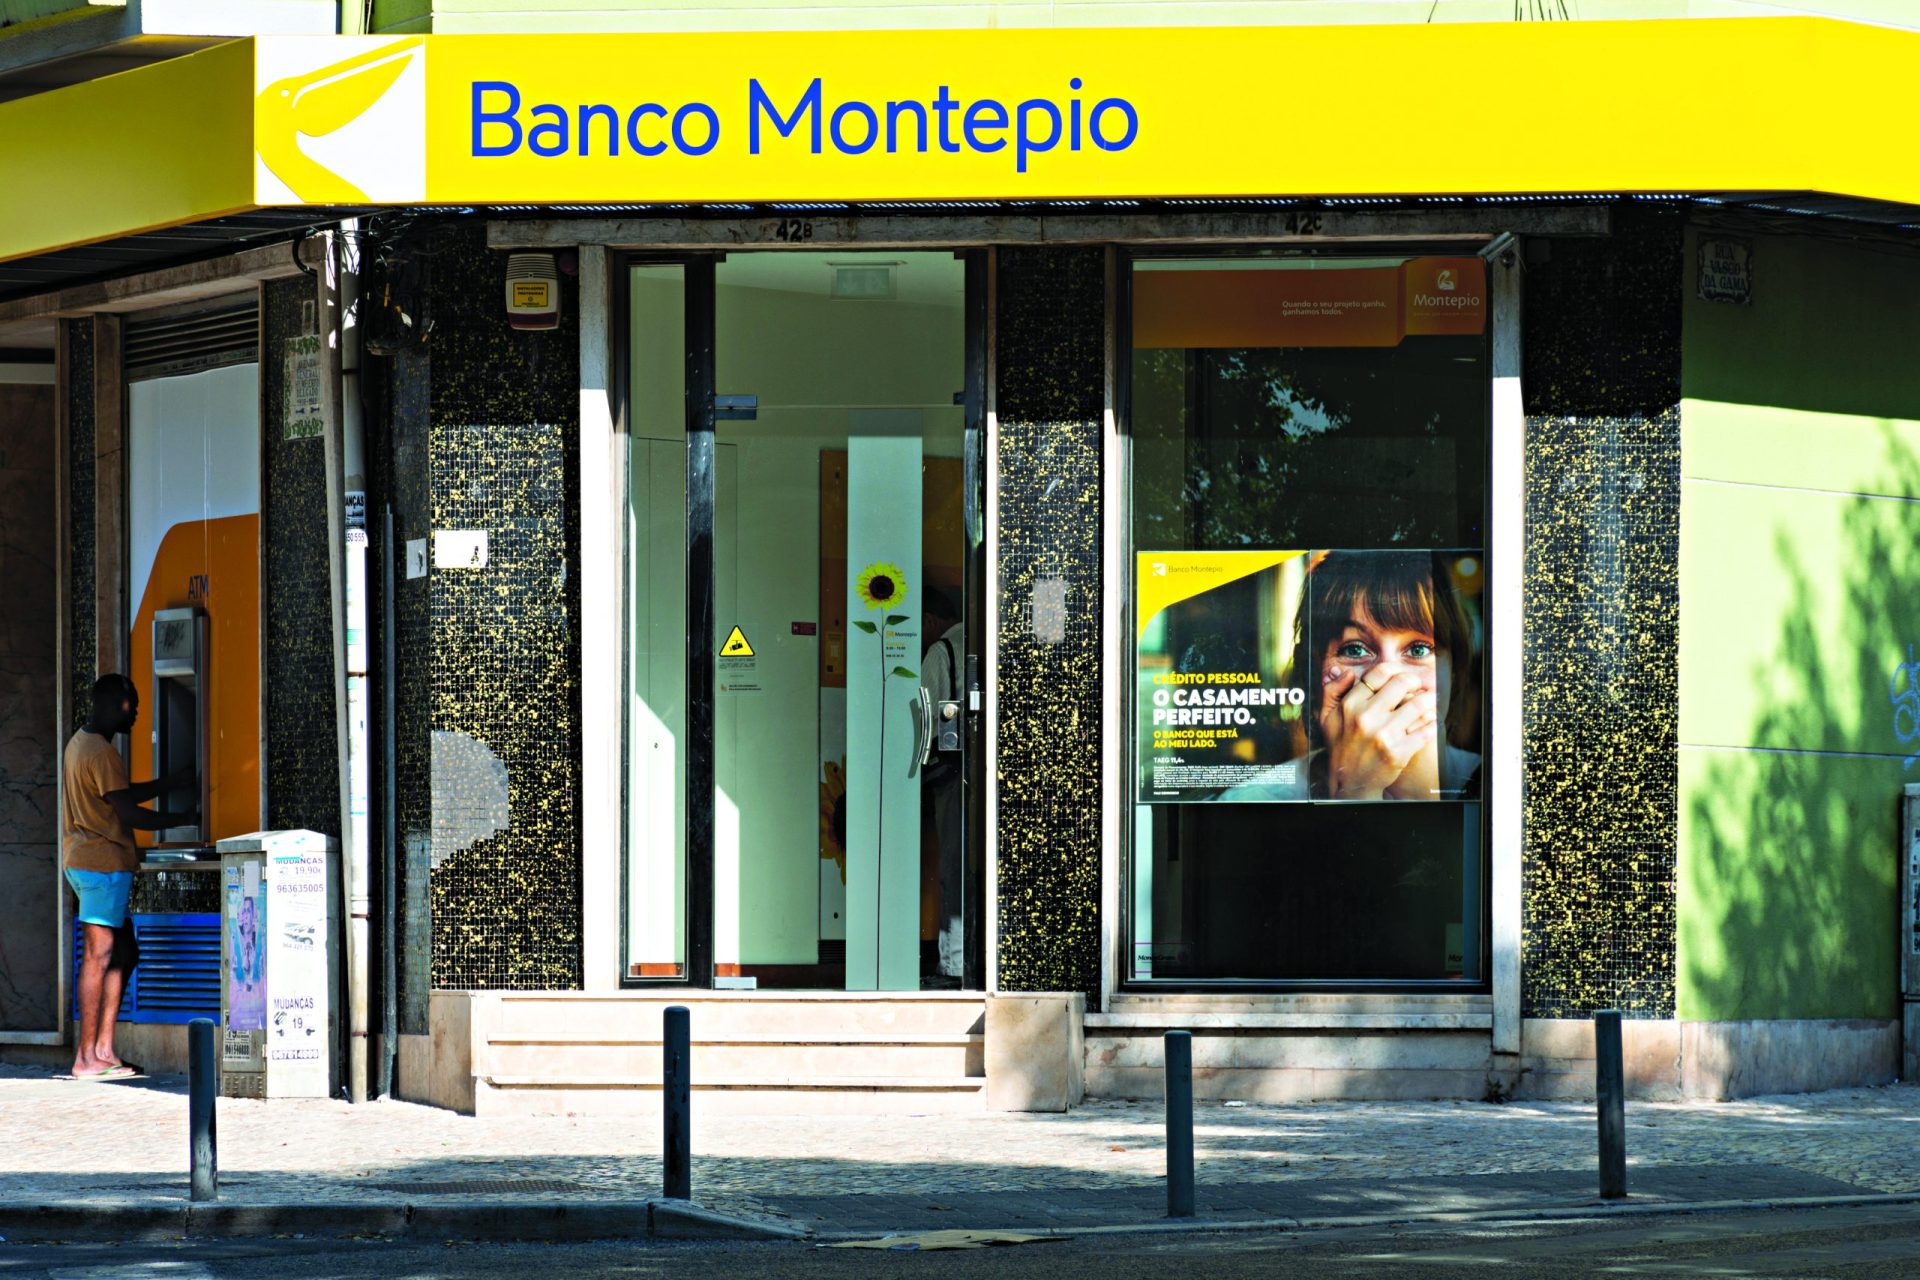 Sindicato dos bancários reuniram com Banco Montepio sobre reestruturação